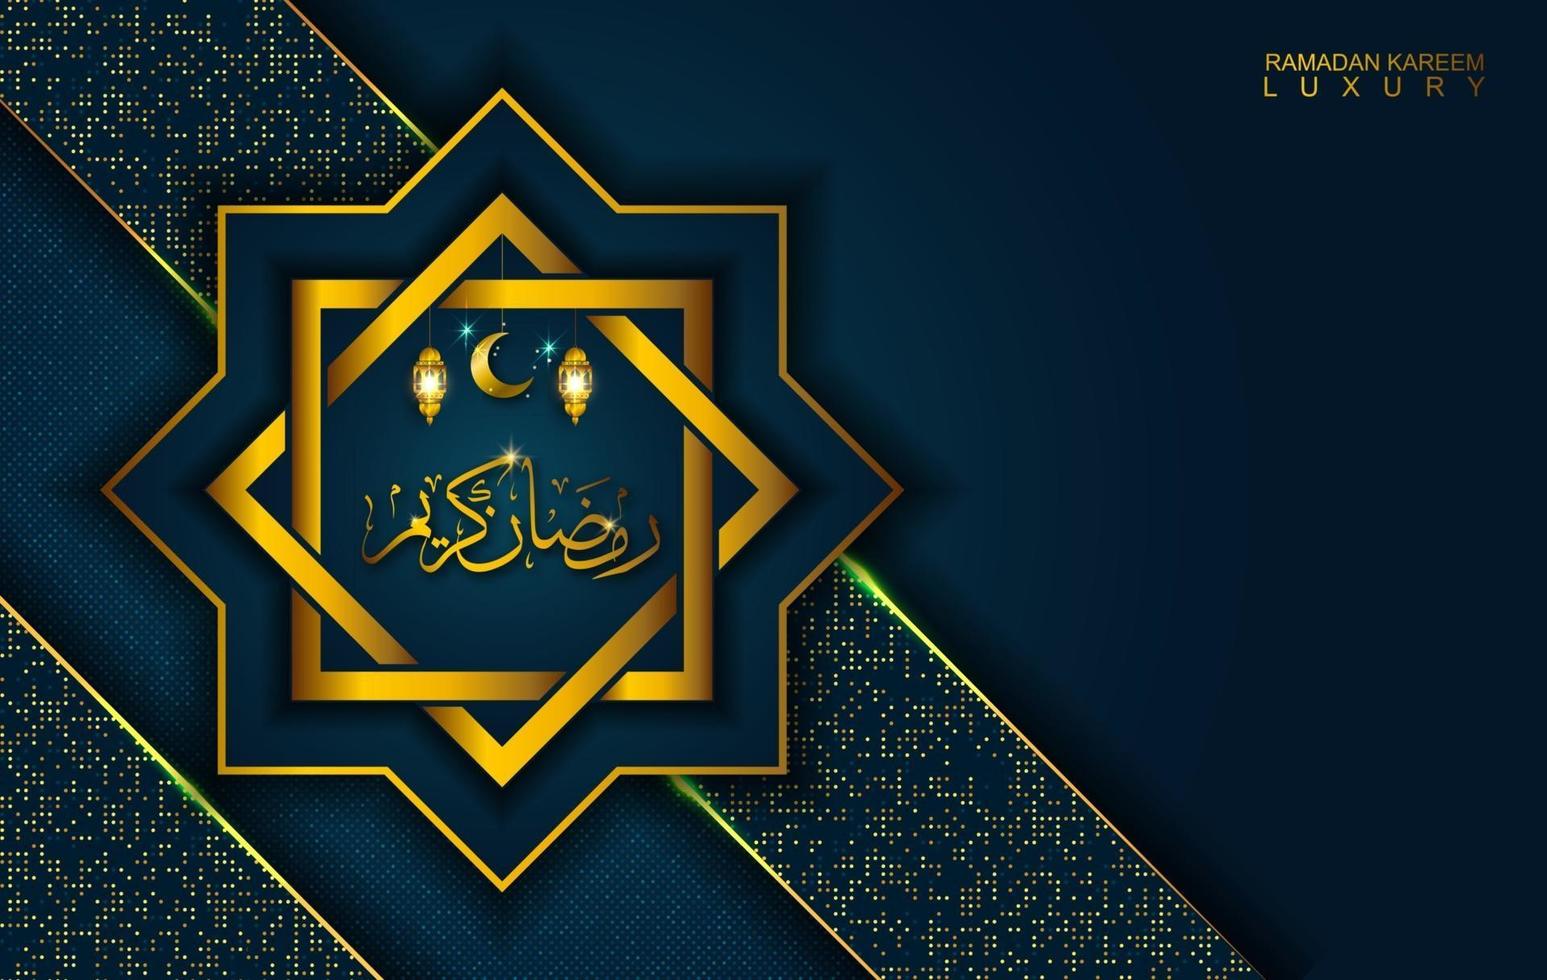 ramadan kareem in stile di lusso con calligrafia araba. mandala d'oro di lusso su sfondo blu scuro per ramadan mubarak vettore